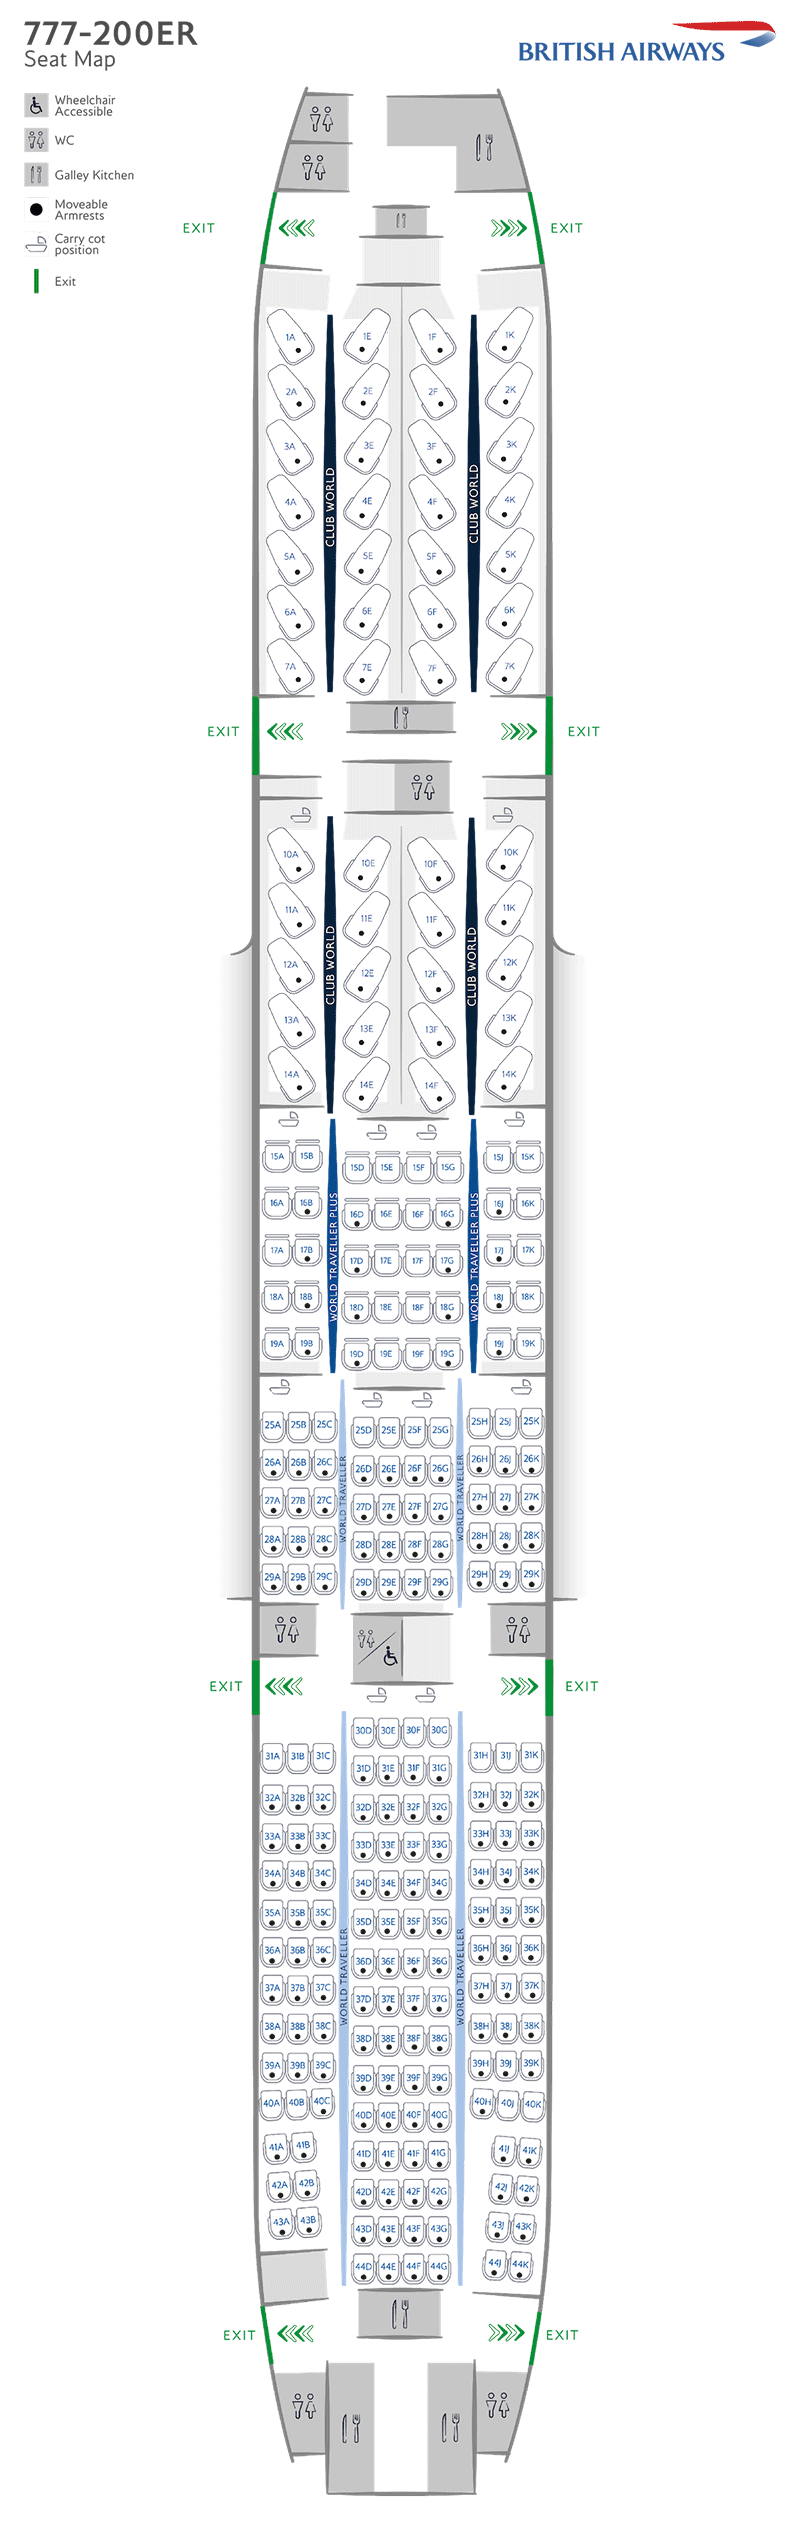 Configurazione dei posti B777-200ER